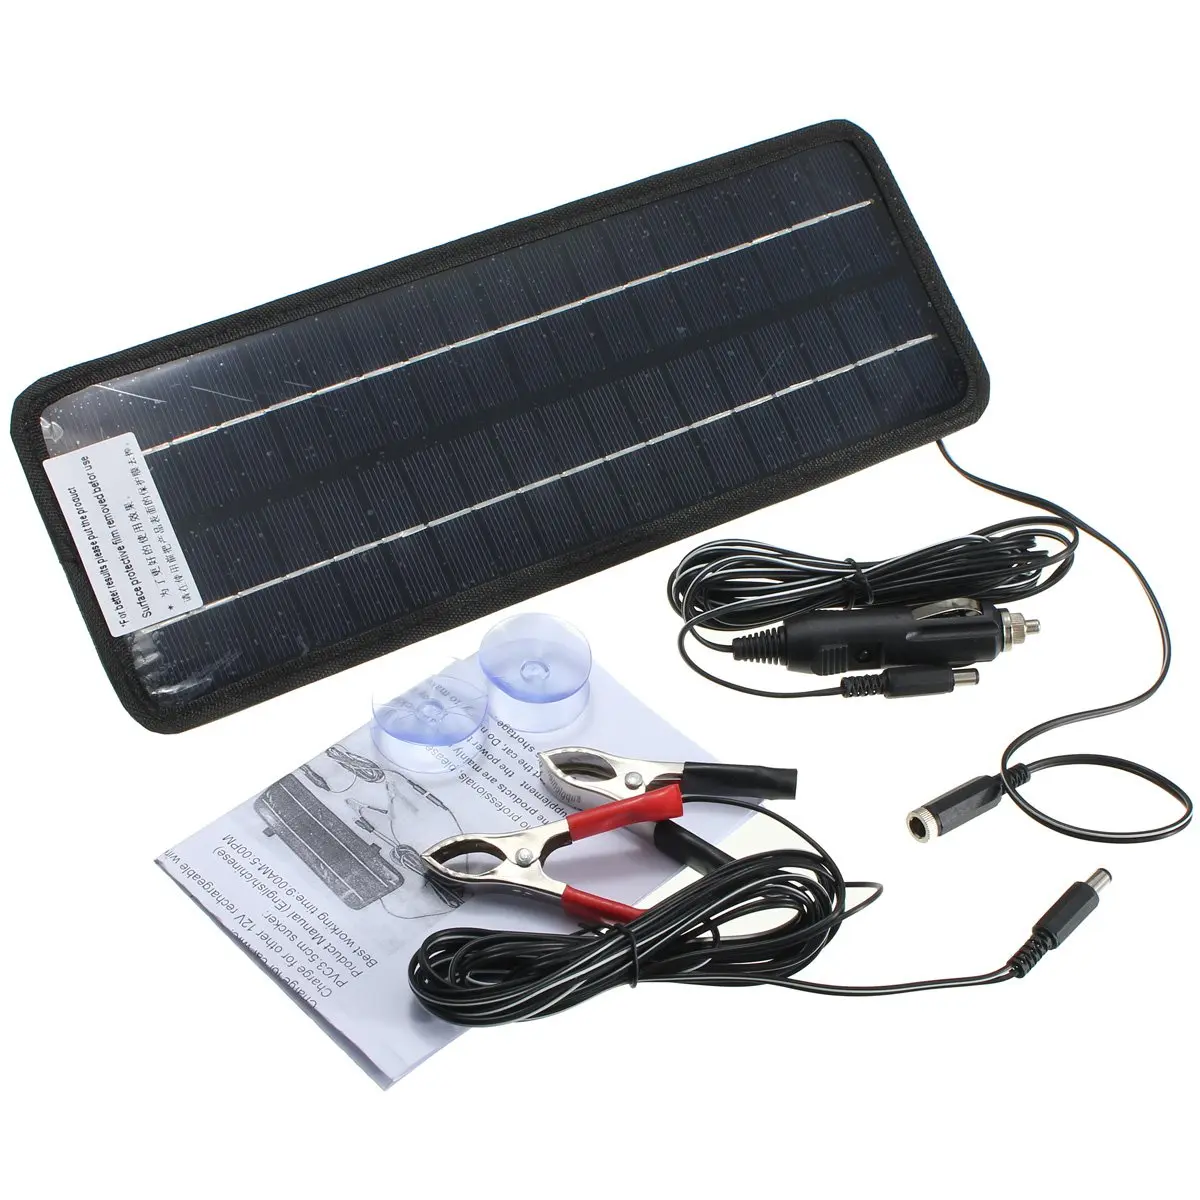 LEORY 12 В 4,5 Вт солнечная панель портативная монокристаллическая солнечная батарея зарядное устройство DIY модуль аккумуляторной системы для автомобиля Автомобильная лодка